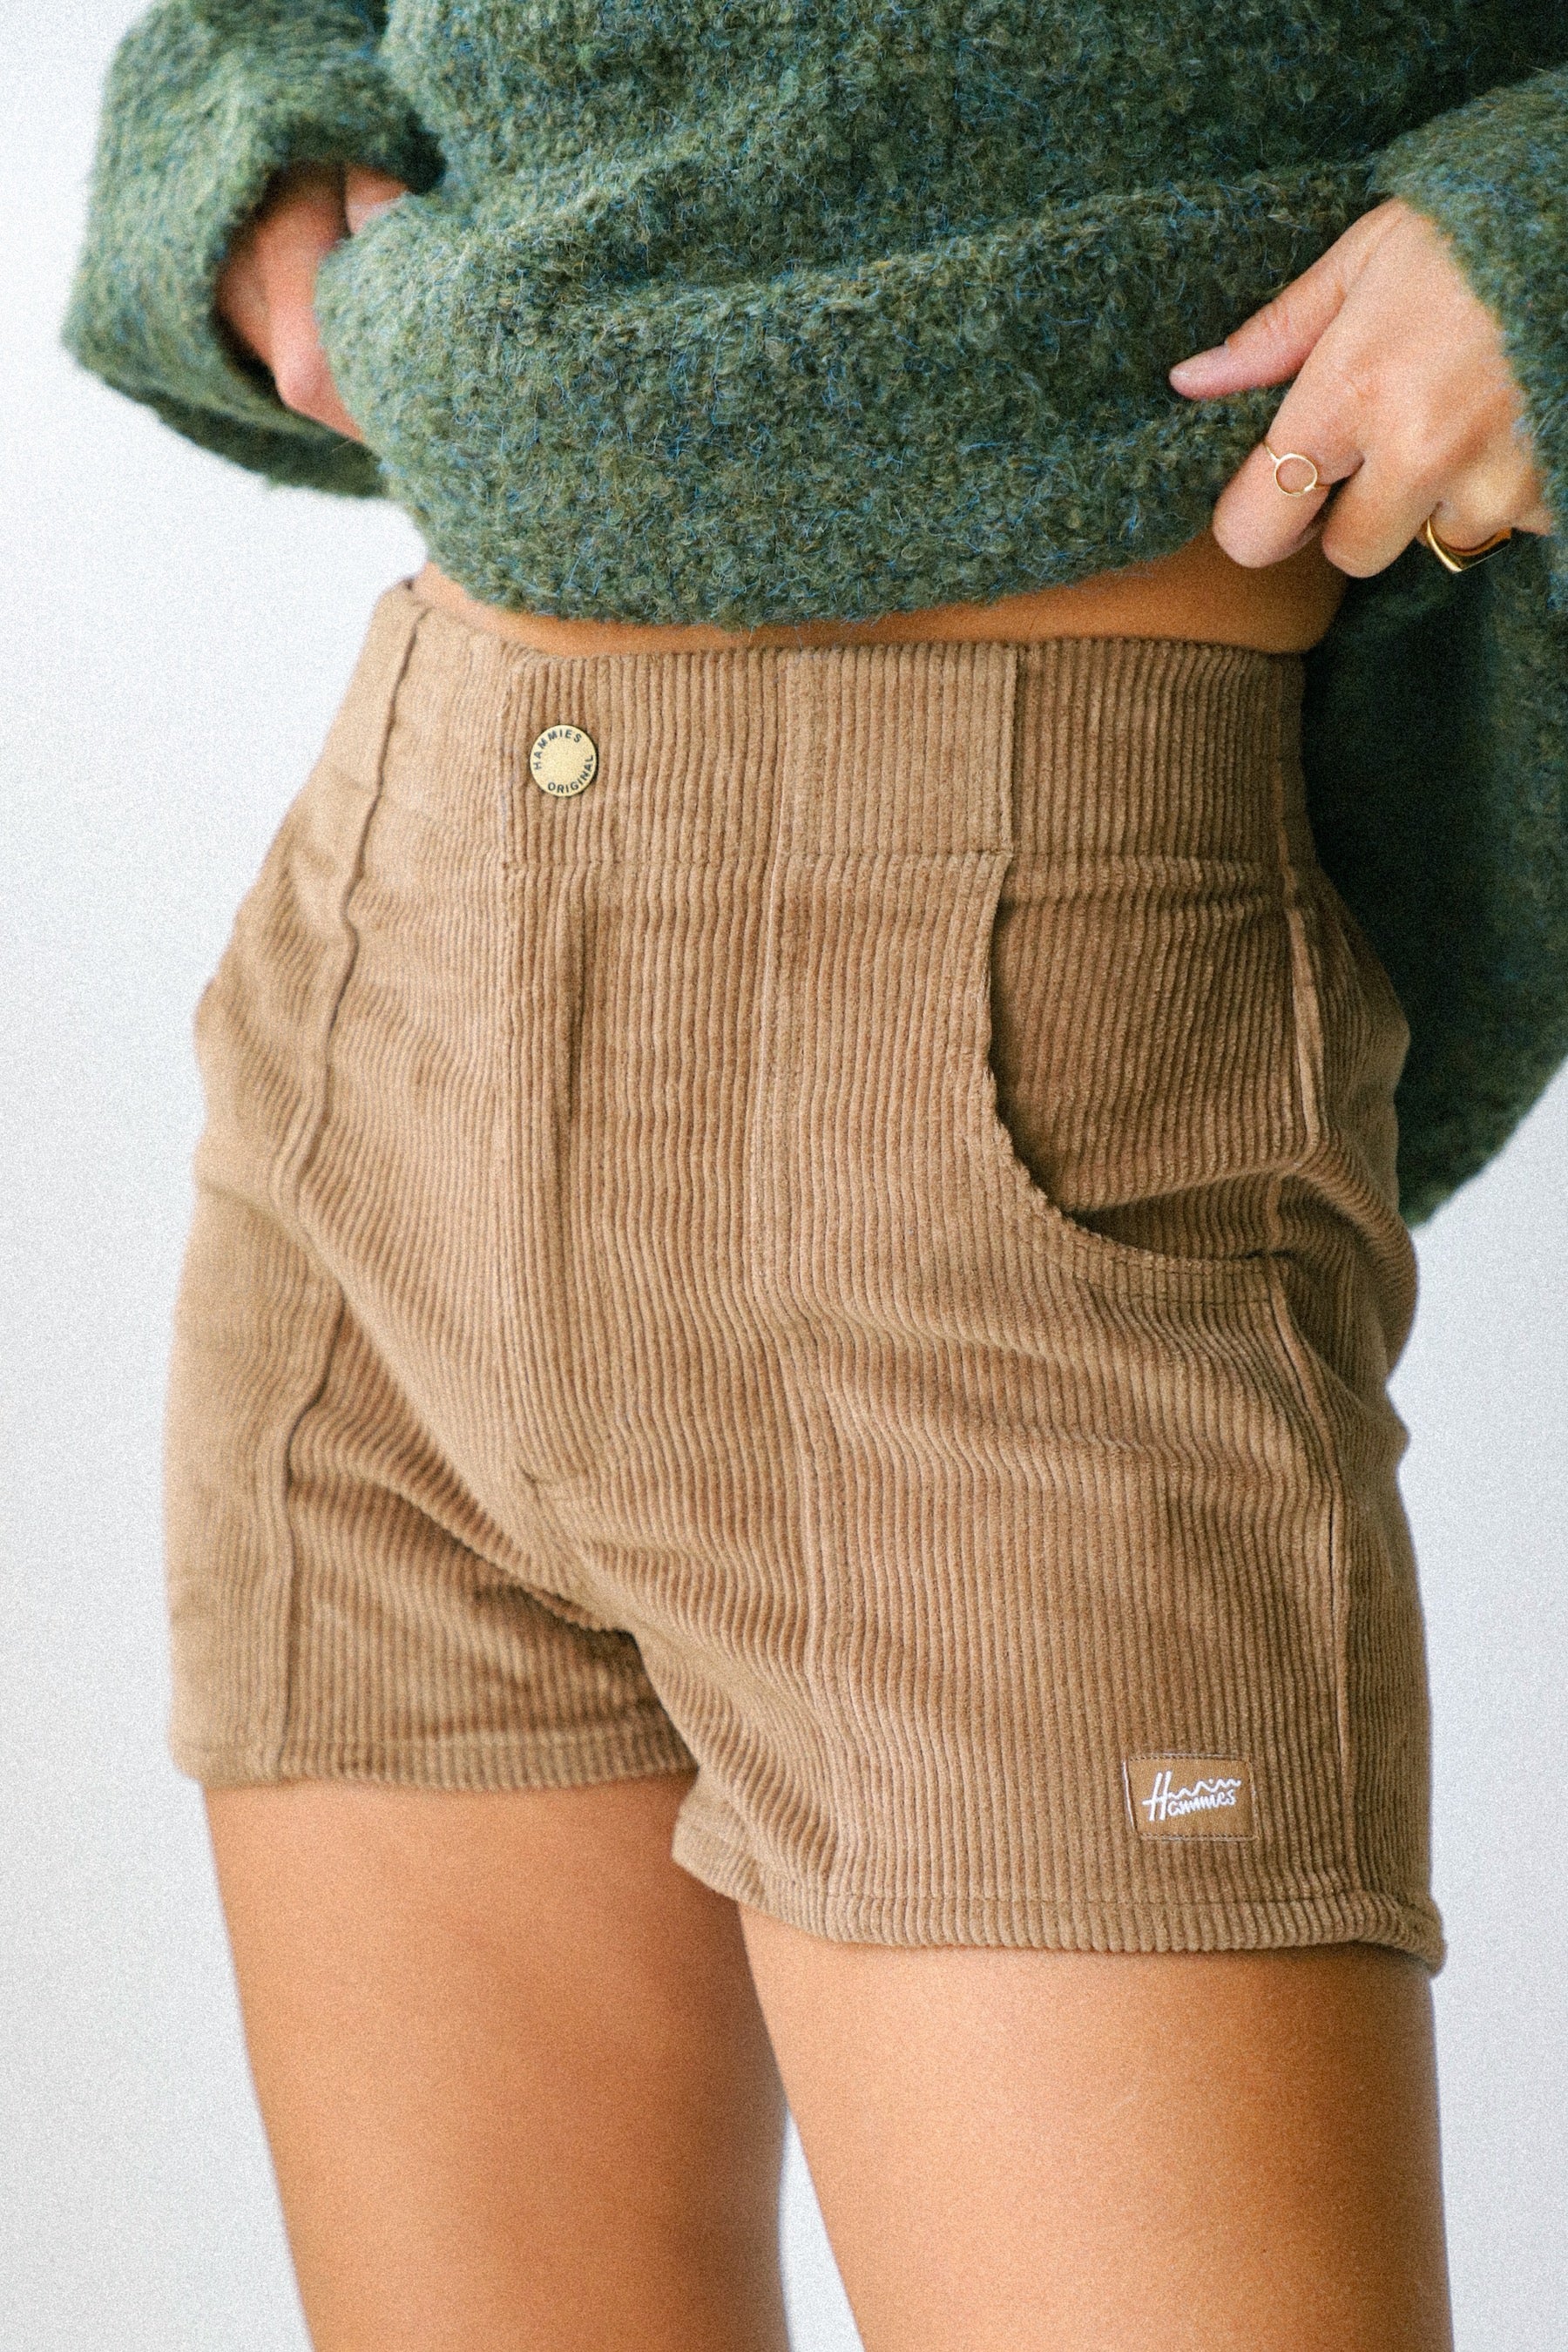 Hammies Shorts - Brown